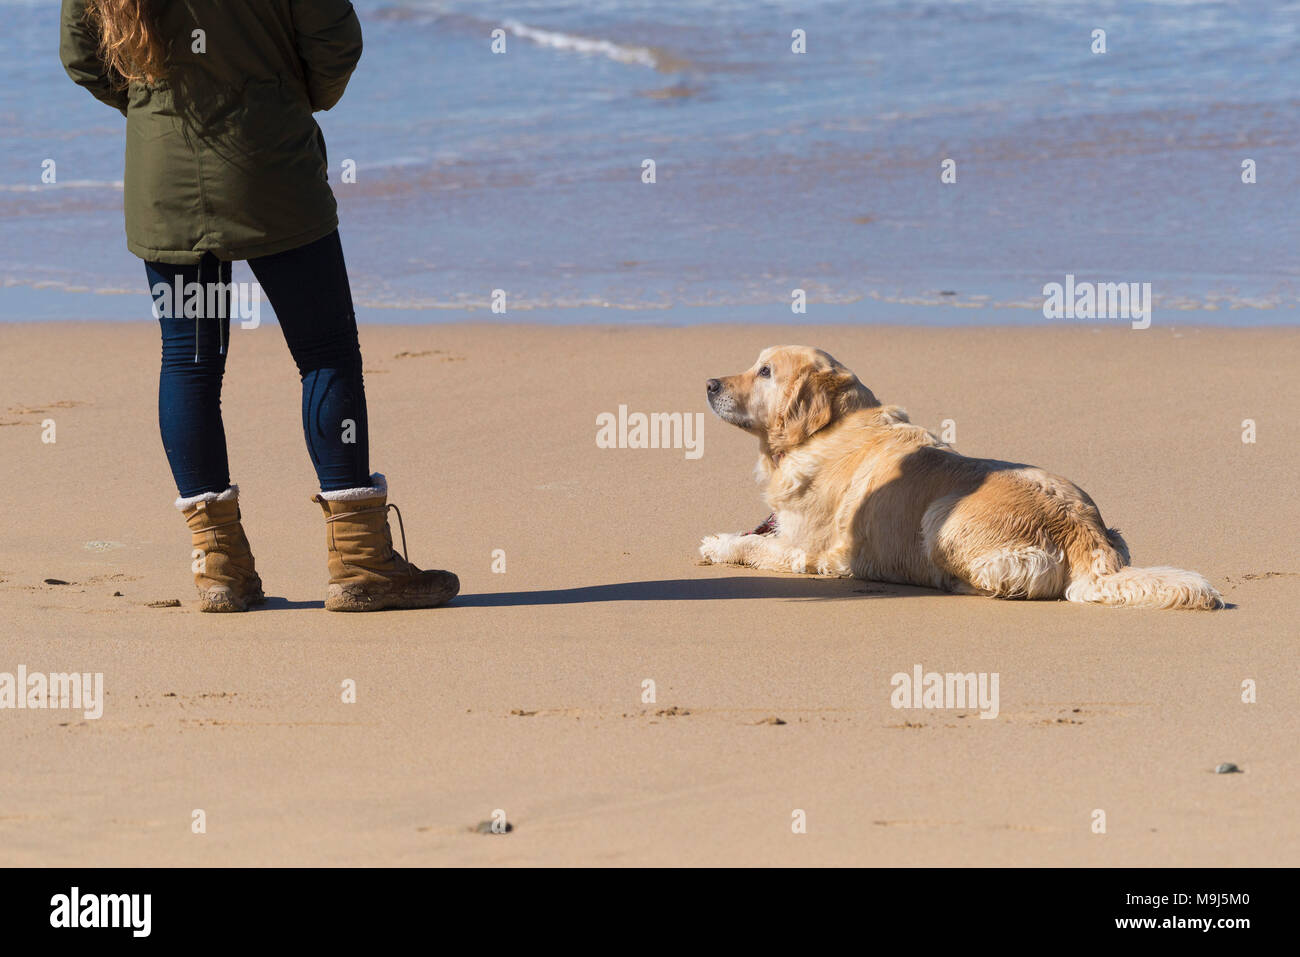 Un perro en una playa mirando a su dueño. Foto de stock